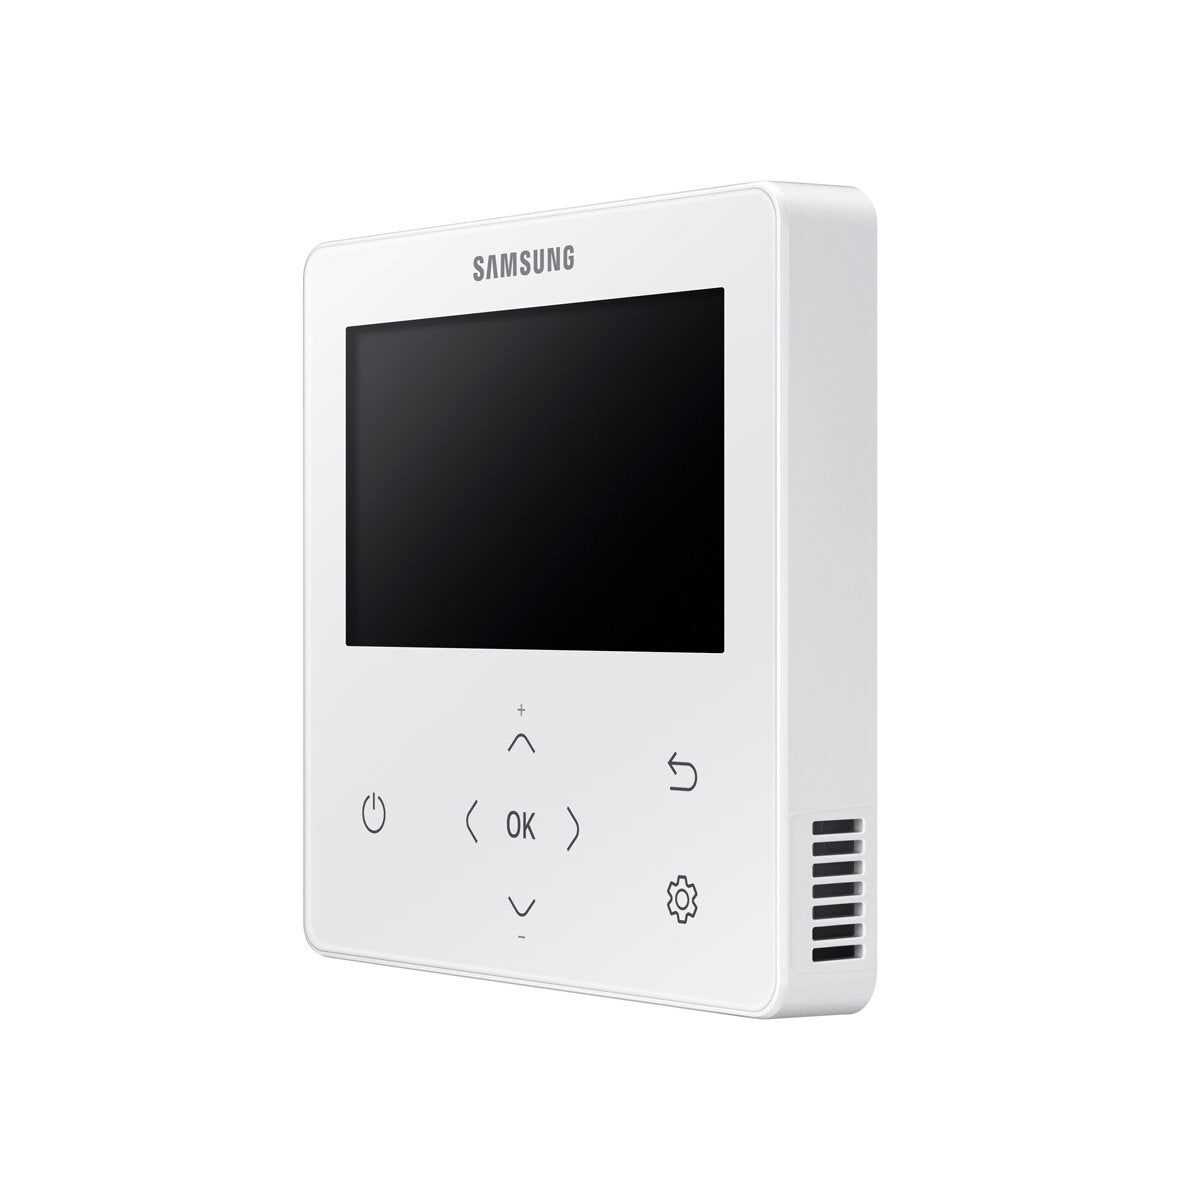 Samsung Climatiseur Windfree 4 voies split carré 12000 + 12000 + 12000 + 12000 BTU inverter A++ unité extérieure 10,0 kW